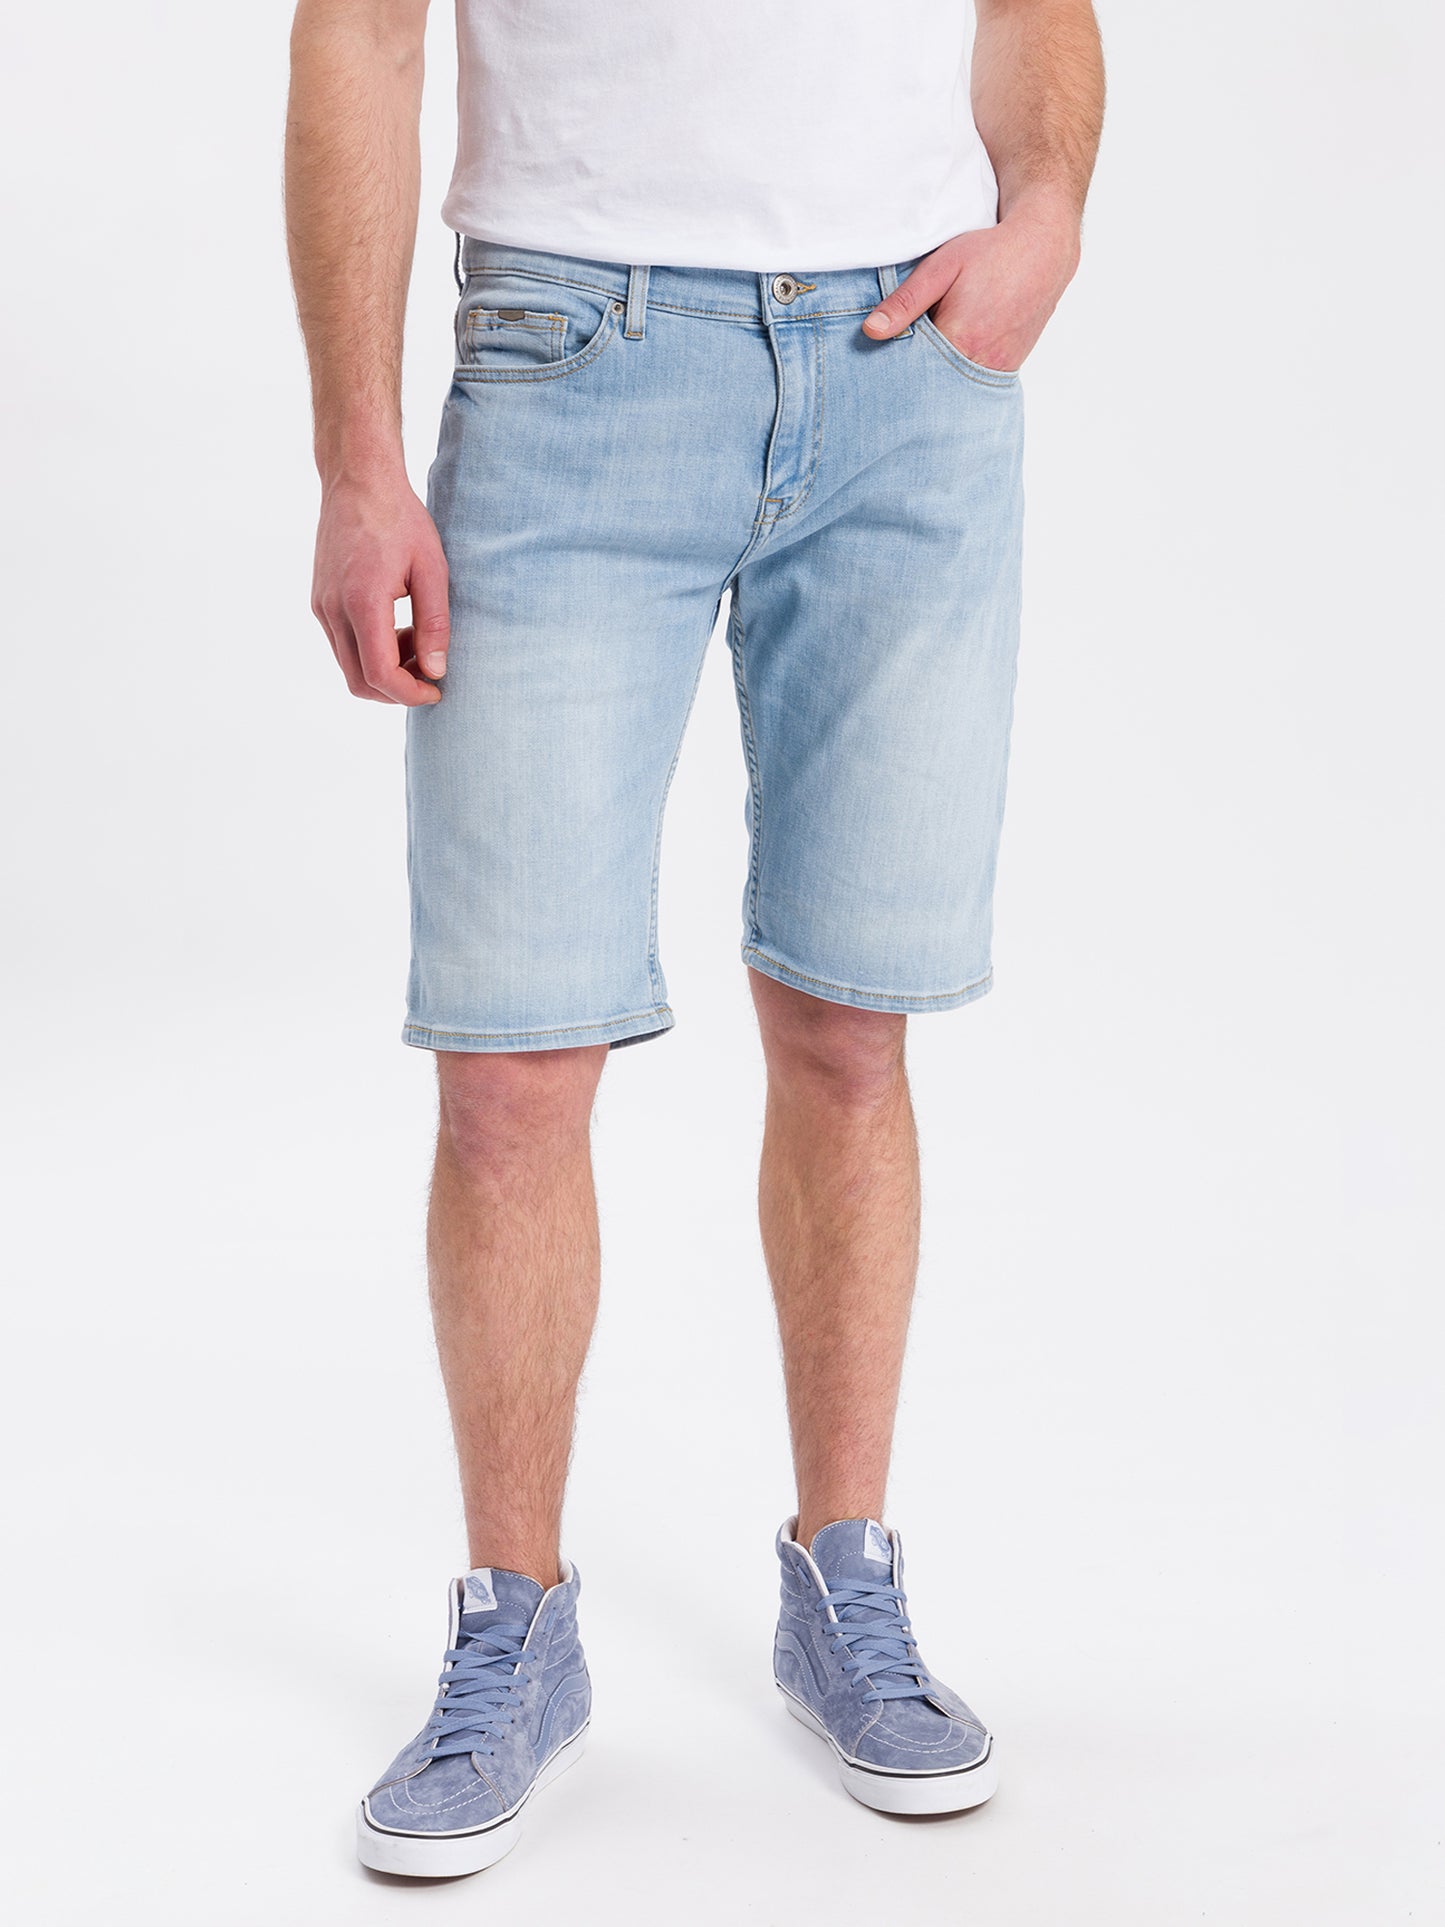 Leom Herren Jeans Regular Shorts hellblau